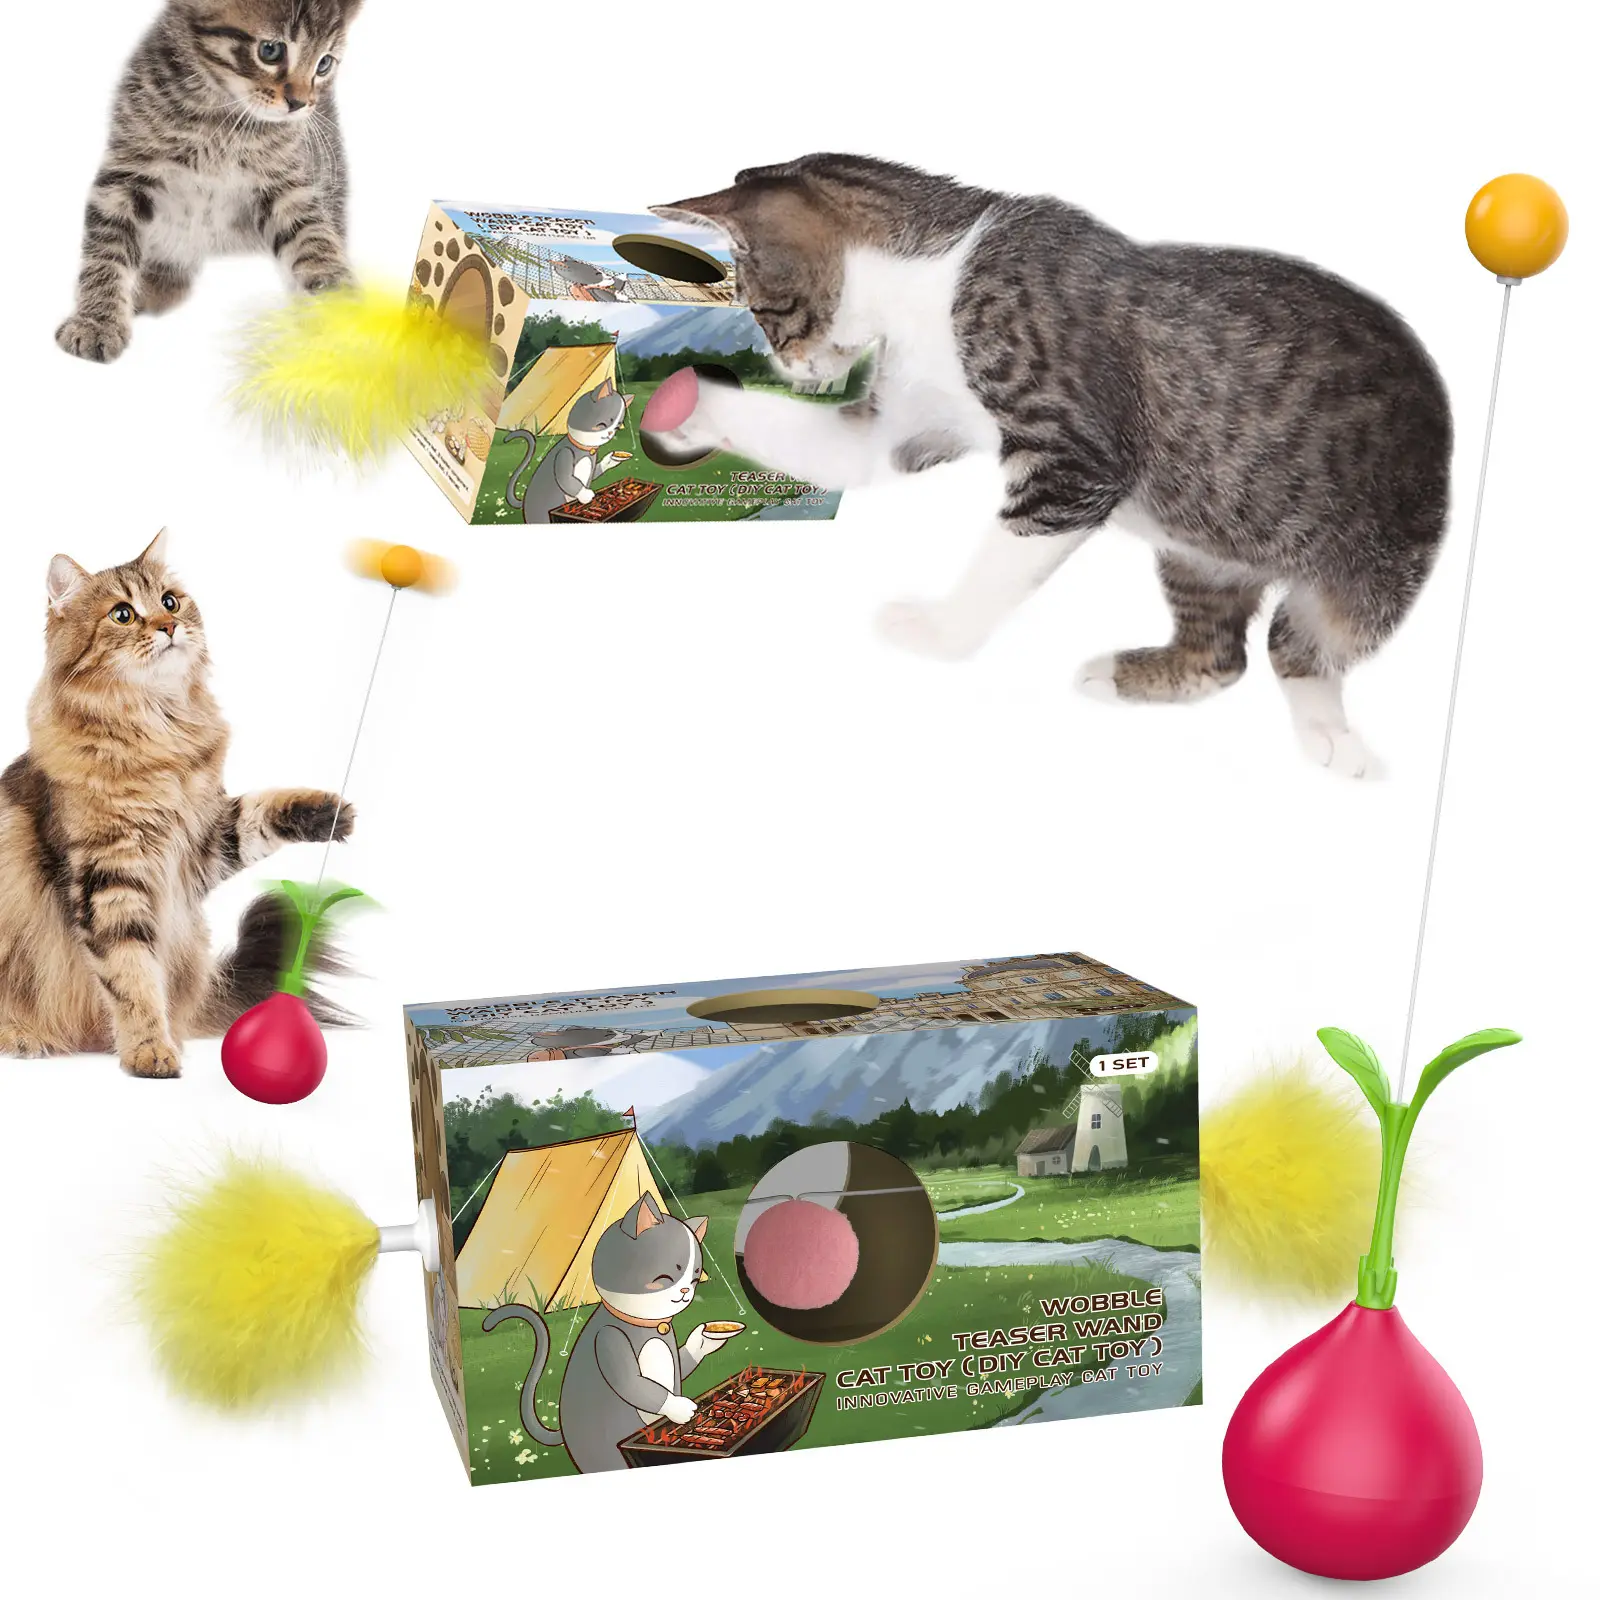 وصل حديثاً صندوق تعليمي تفاعلي لعبة فأر صديق للبيئة لعبة طائر كأس بجاذبية مضادة للقلق لقطط أليفة